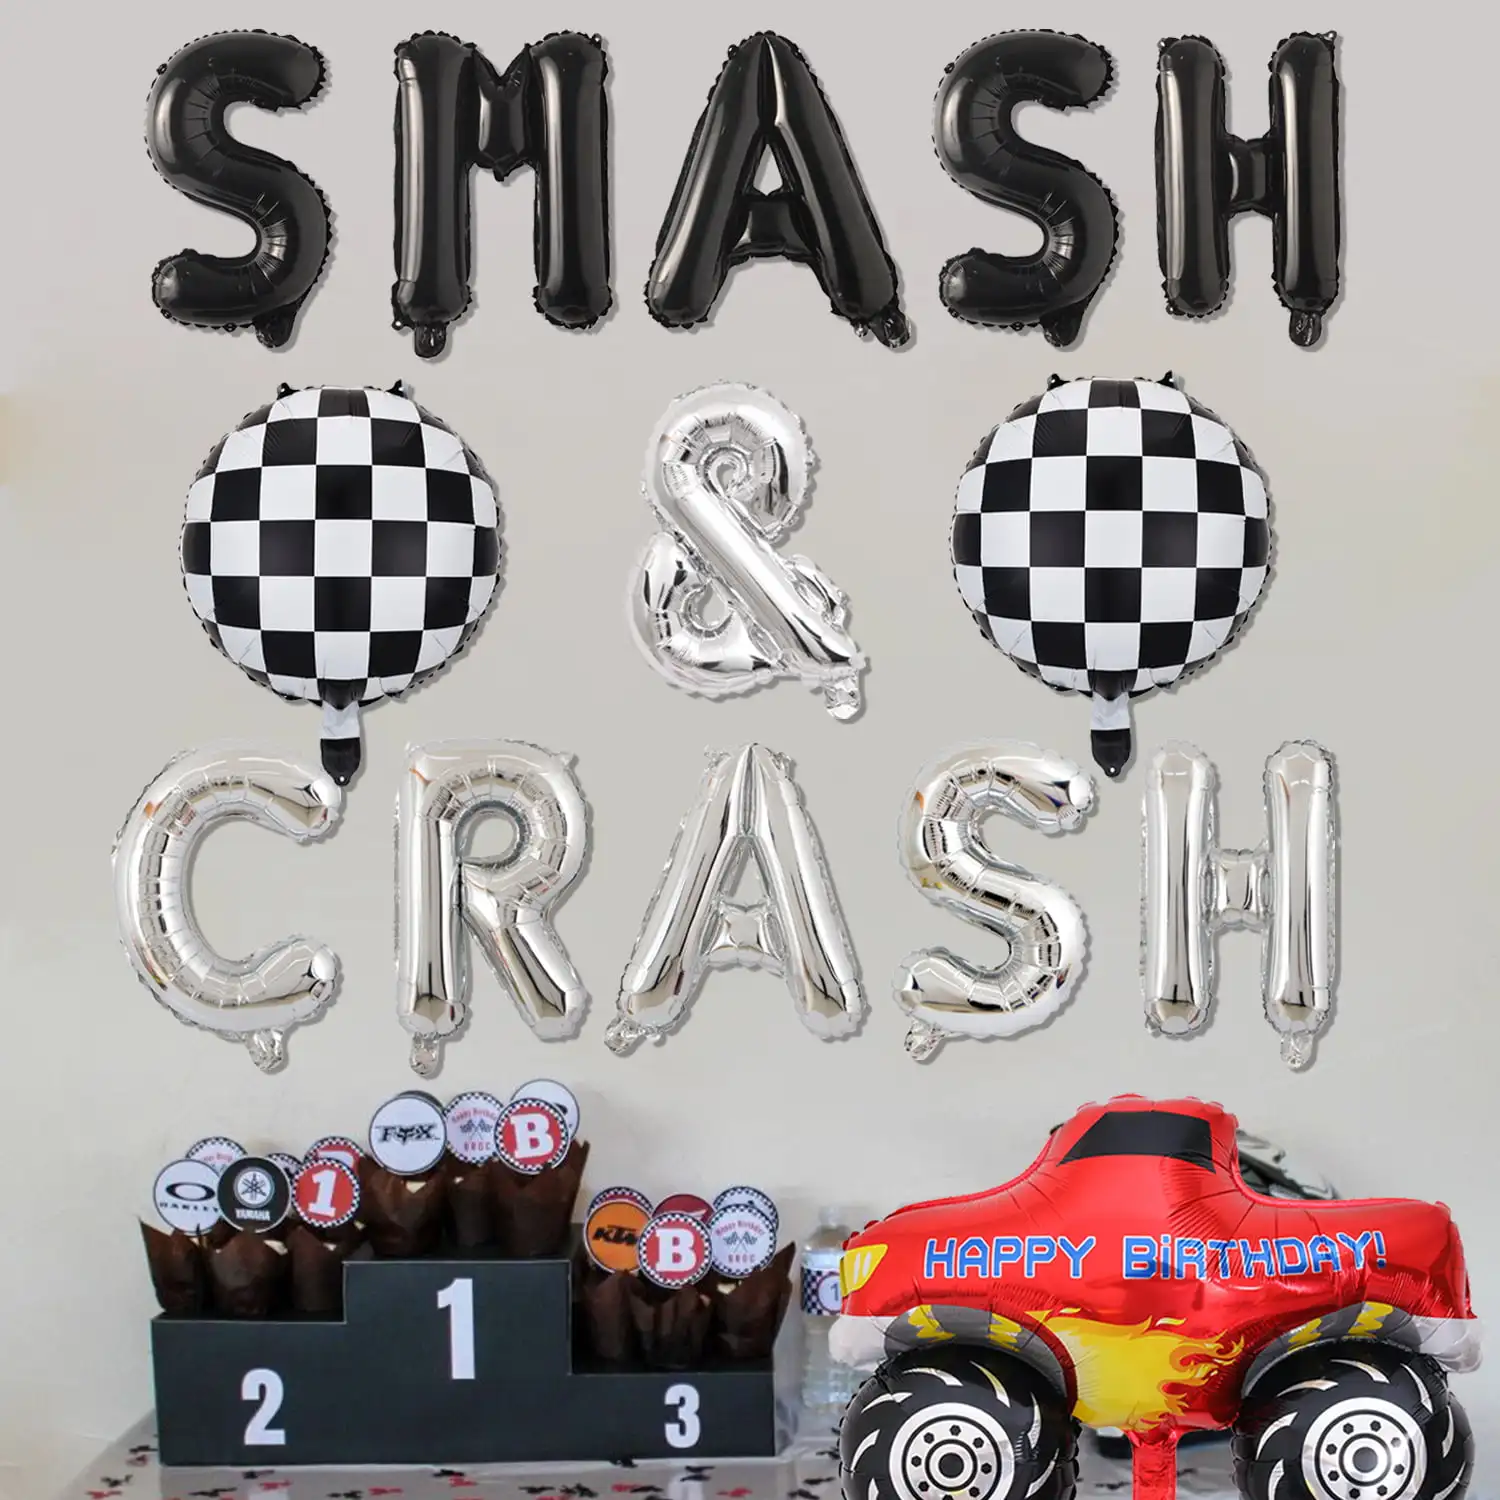 Украшения для дня рождения гоночных автомобилей, воздушные шары с надписями SMASH & CRASH и винтажные воздушные шары из фольги в шахматном порядке для мальчиков 2